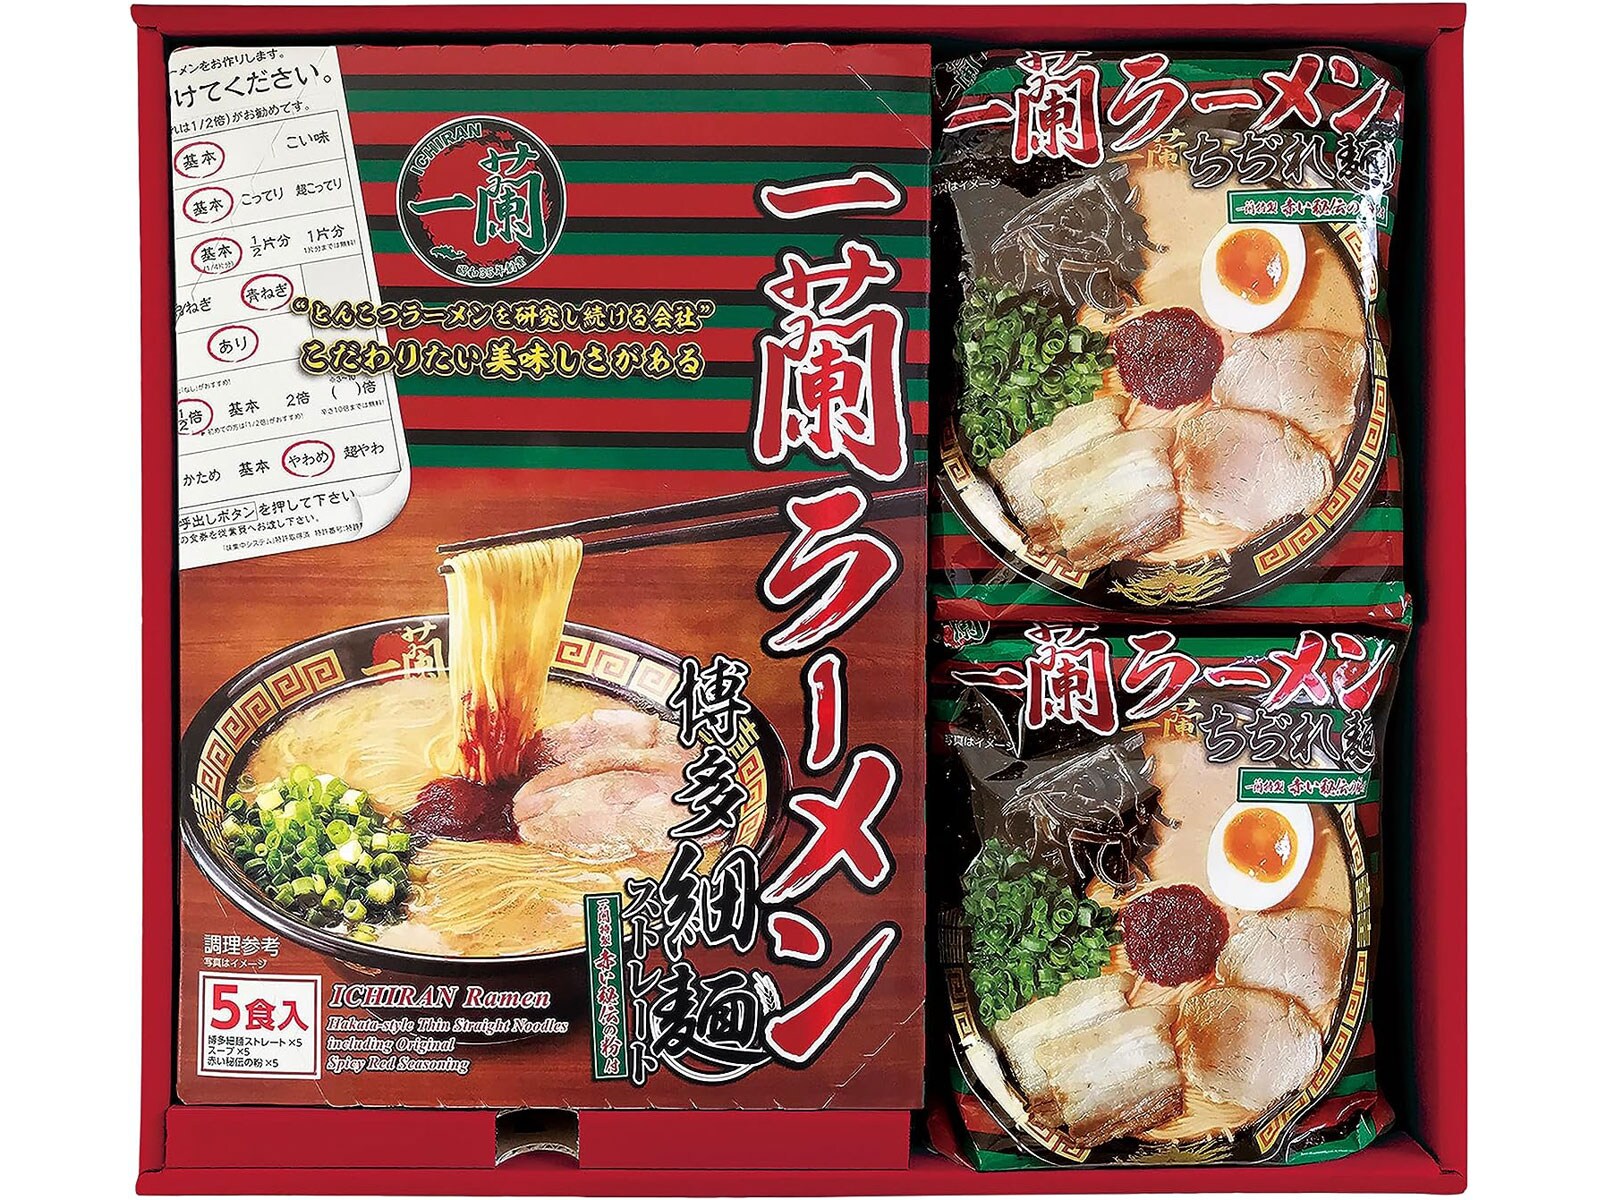 食べてみたい福岡県のお土産ランキング！ 3位「一蘭のラーメン」、2位「博多カリカリ鶏皮」、1位は？